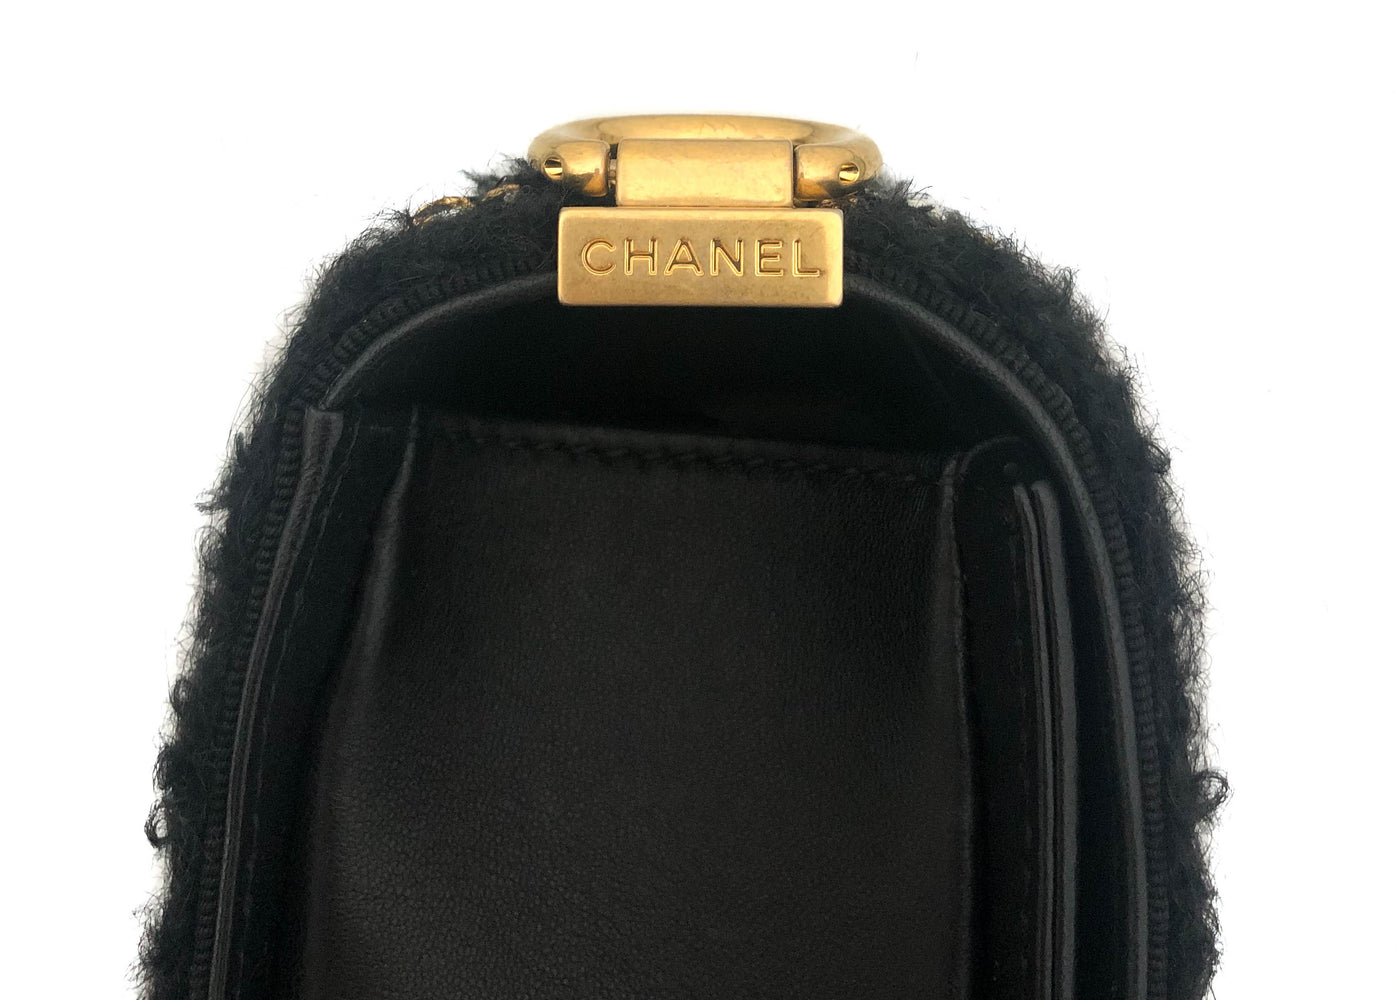 Chanel Rare Tweed "Jacket" Black Lambskin Old Medium Boy Bag